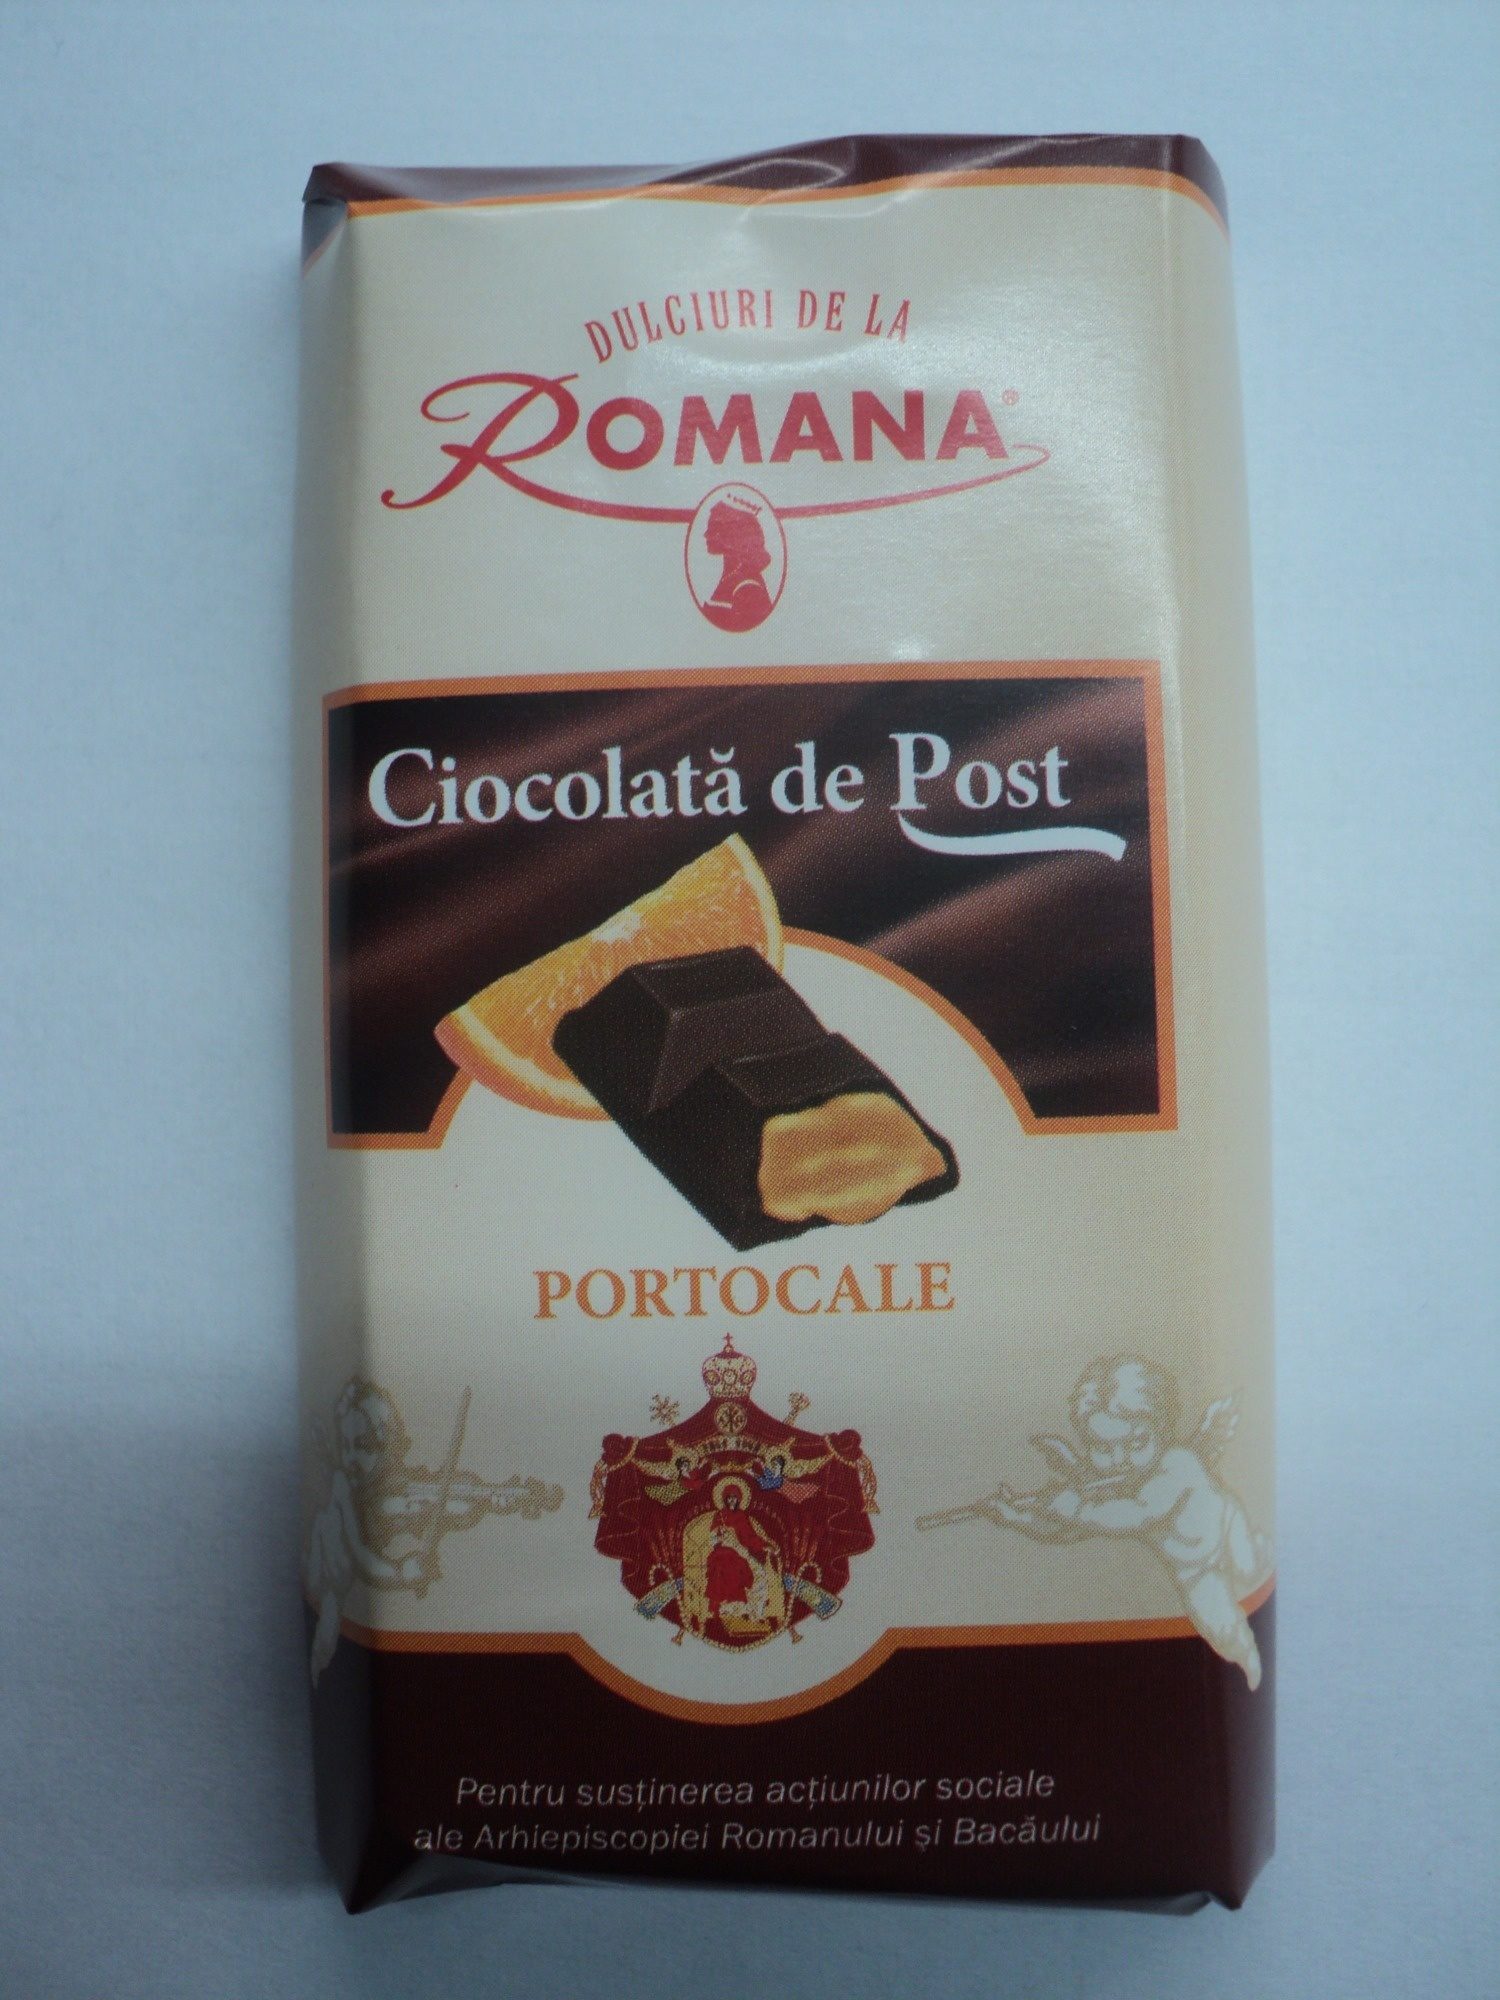 Romana Ciocolată de Post (Portocale) - Product - ro